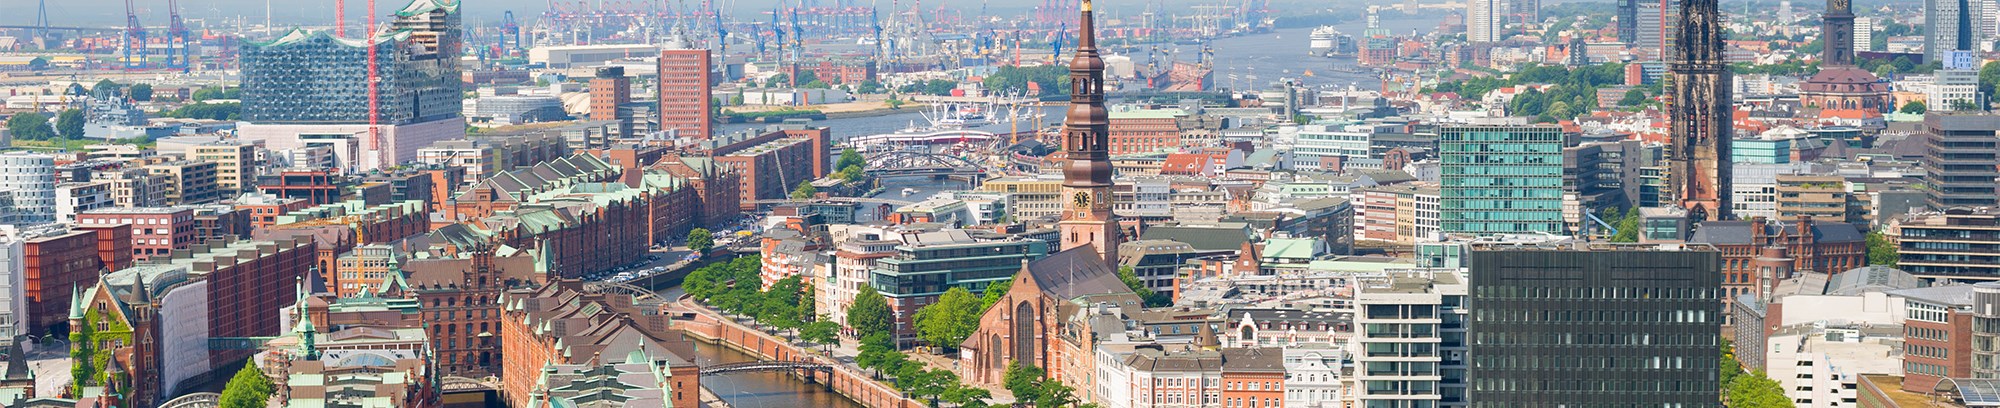 Besøg det smukke Hamburg med FOF Sydjylland